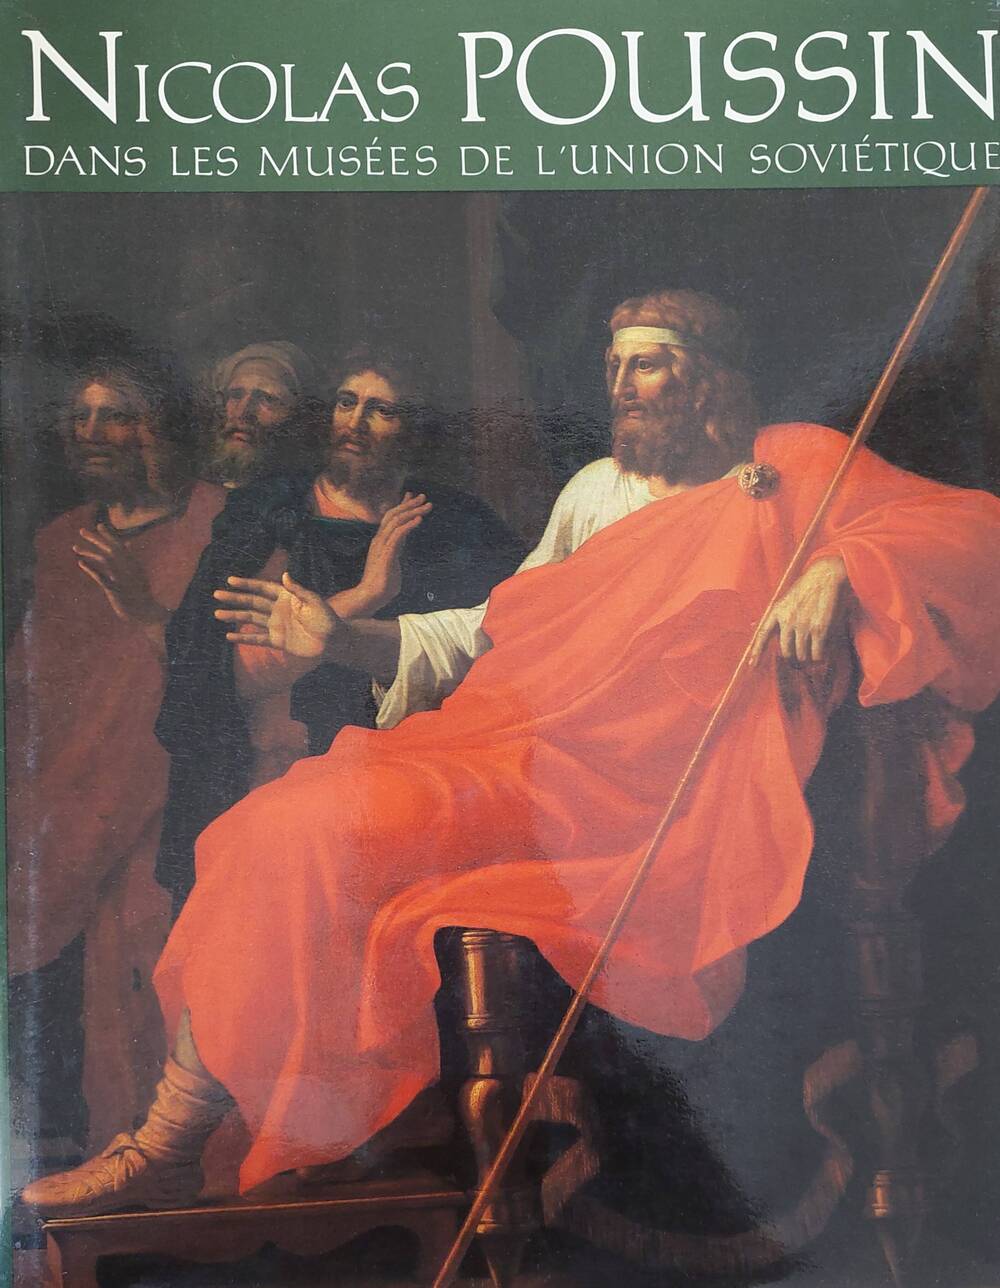 Книга-альбом на французском языке. Никола Пуссен.